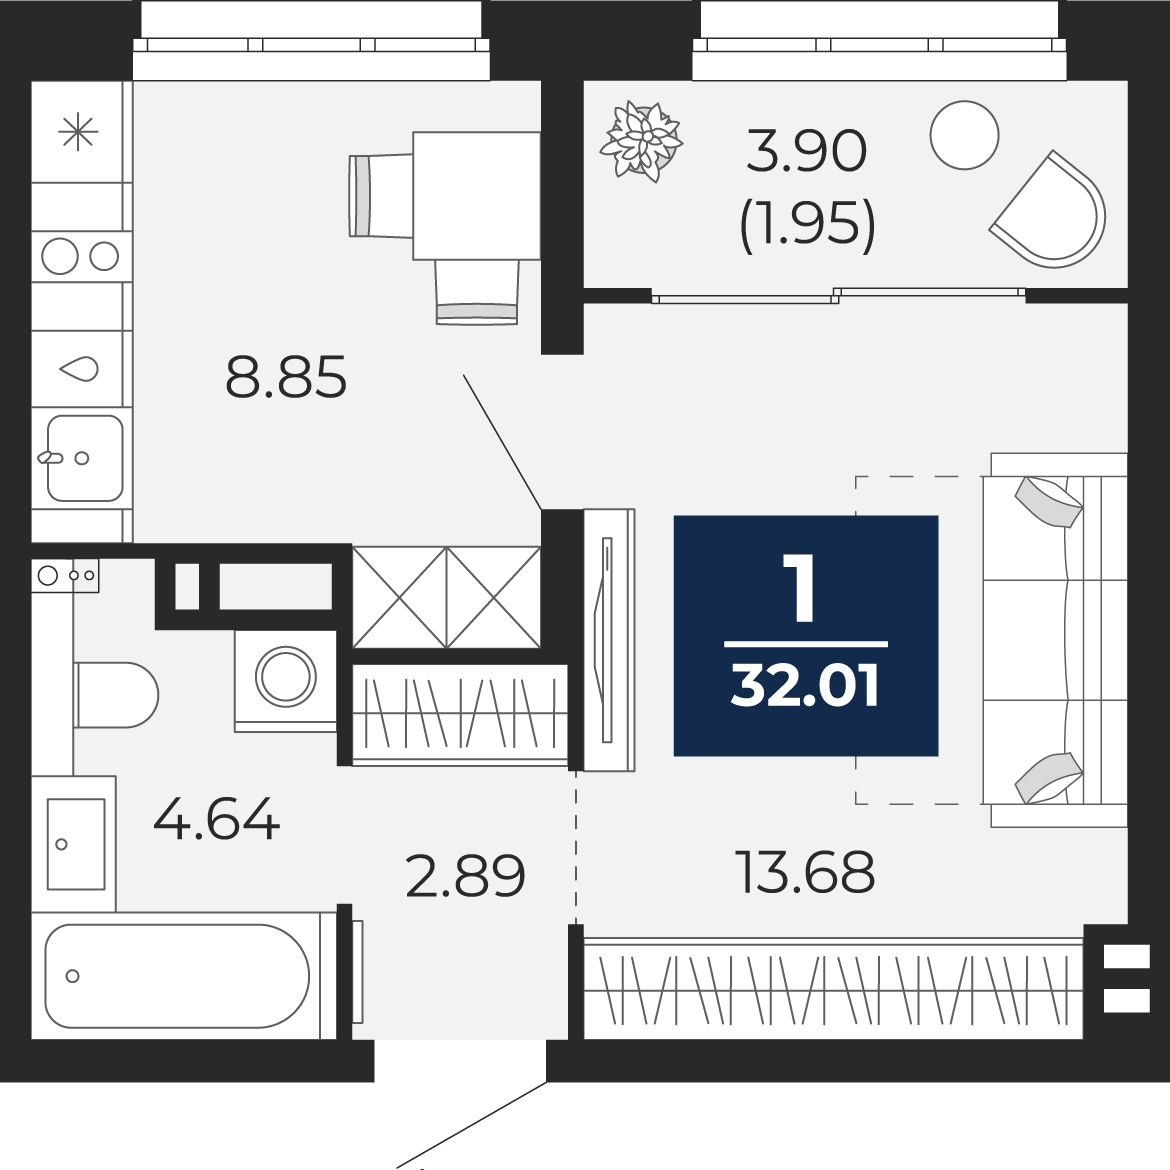 Квартира № 308, 1-комнатная, 32.01 кв. м, 13 этаж